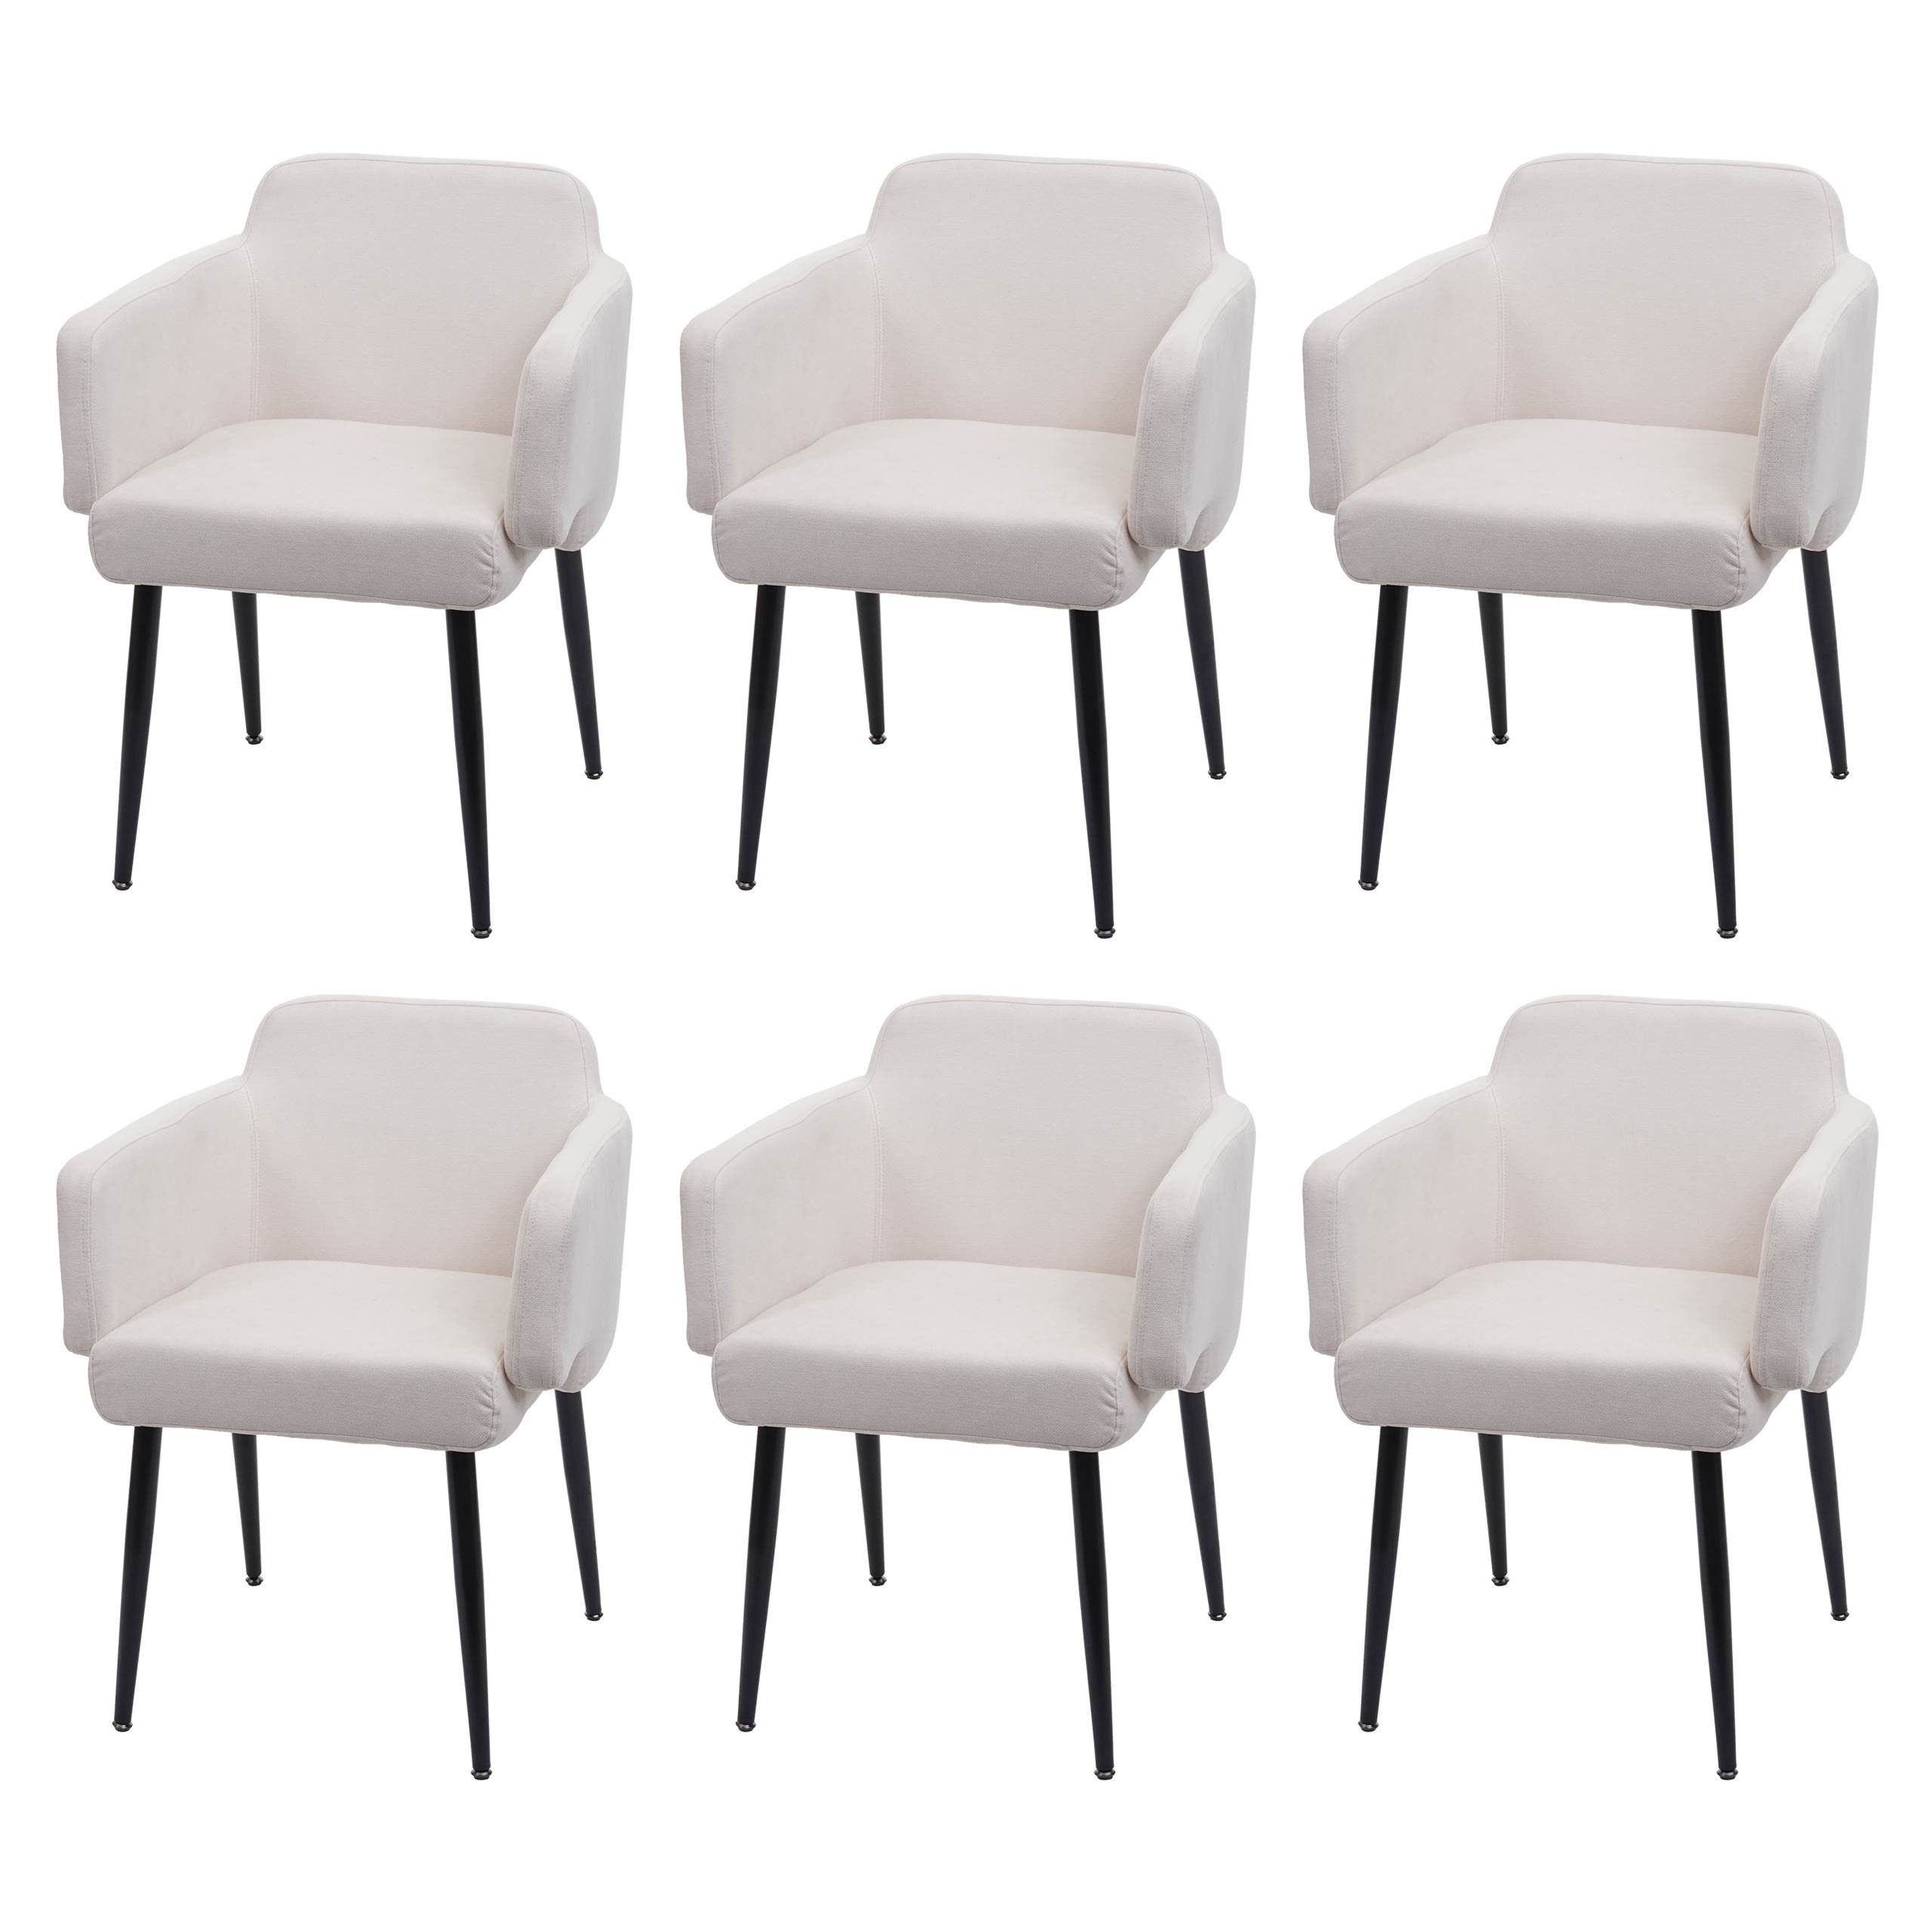 MCW Esszimmerstuhl MCW-L13-6 (6er), Mit gepolsterten Armlehnen, Abgerundete Sitz- und Rückenfläche creme-weiß | creme-weiß | Stühle